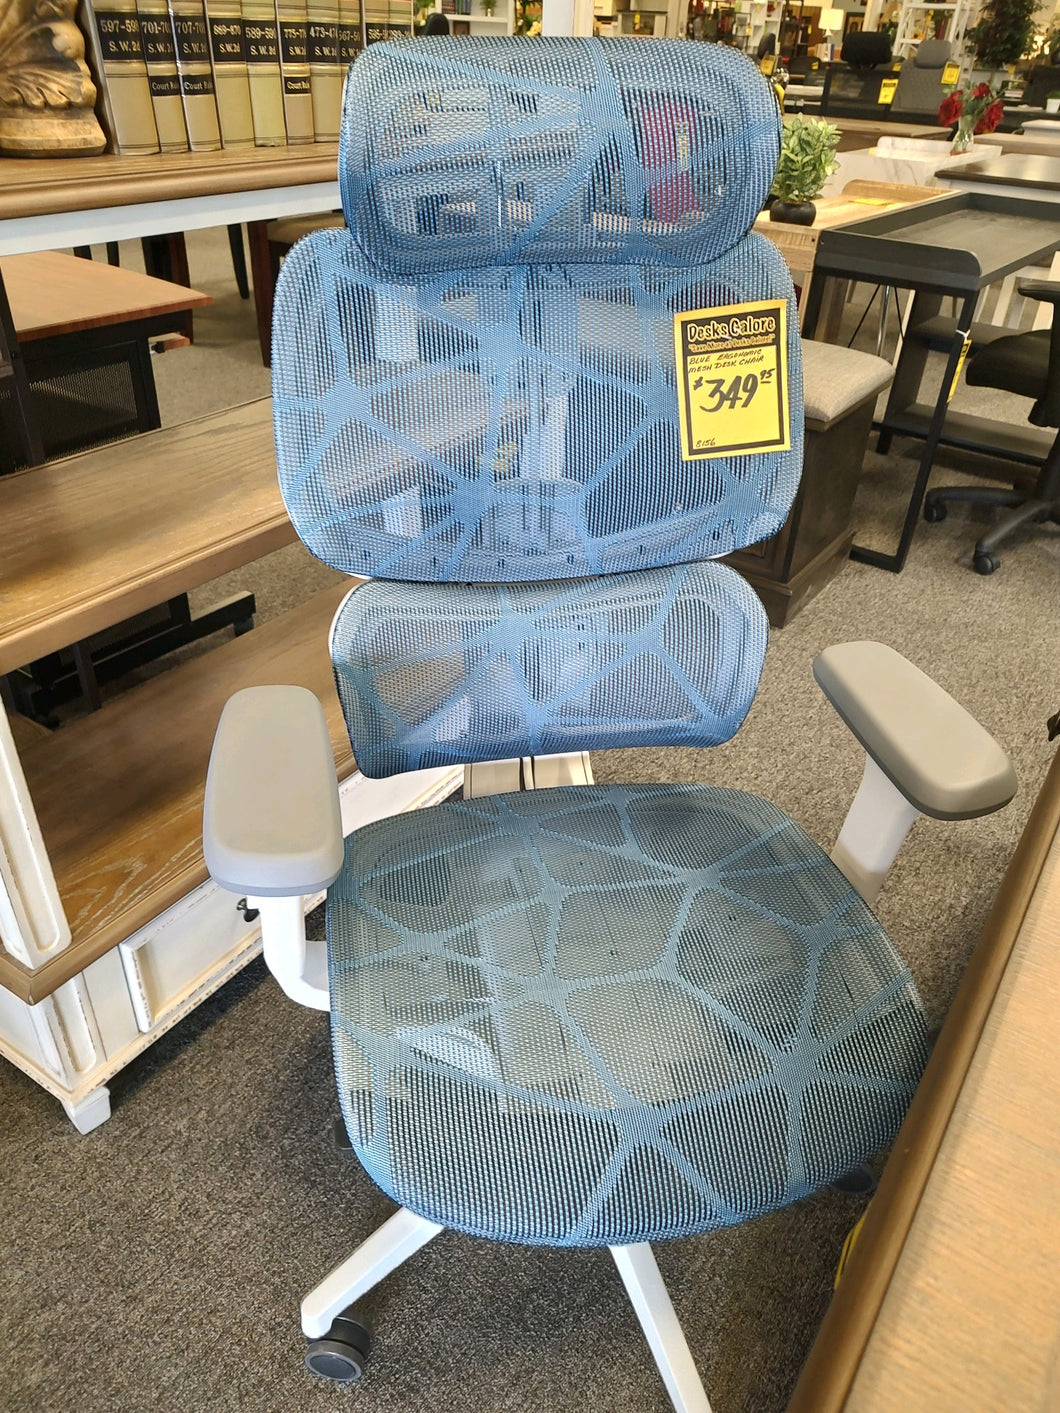 #8156 Blue Ergonomic Mesh Desk Chair - 1 Only! $369.95